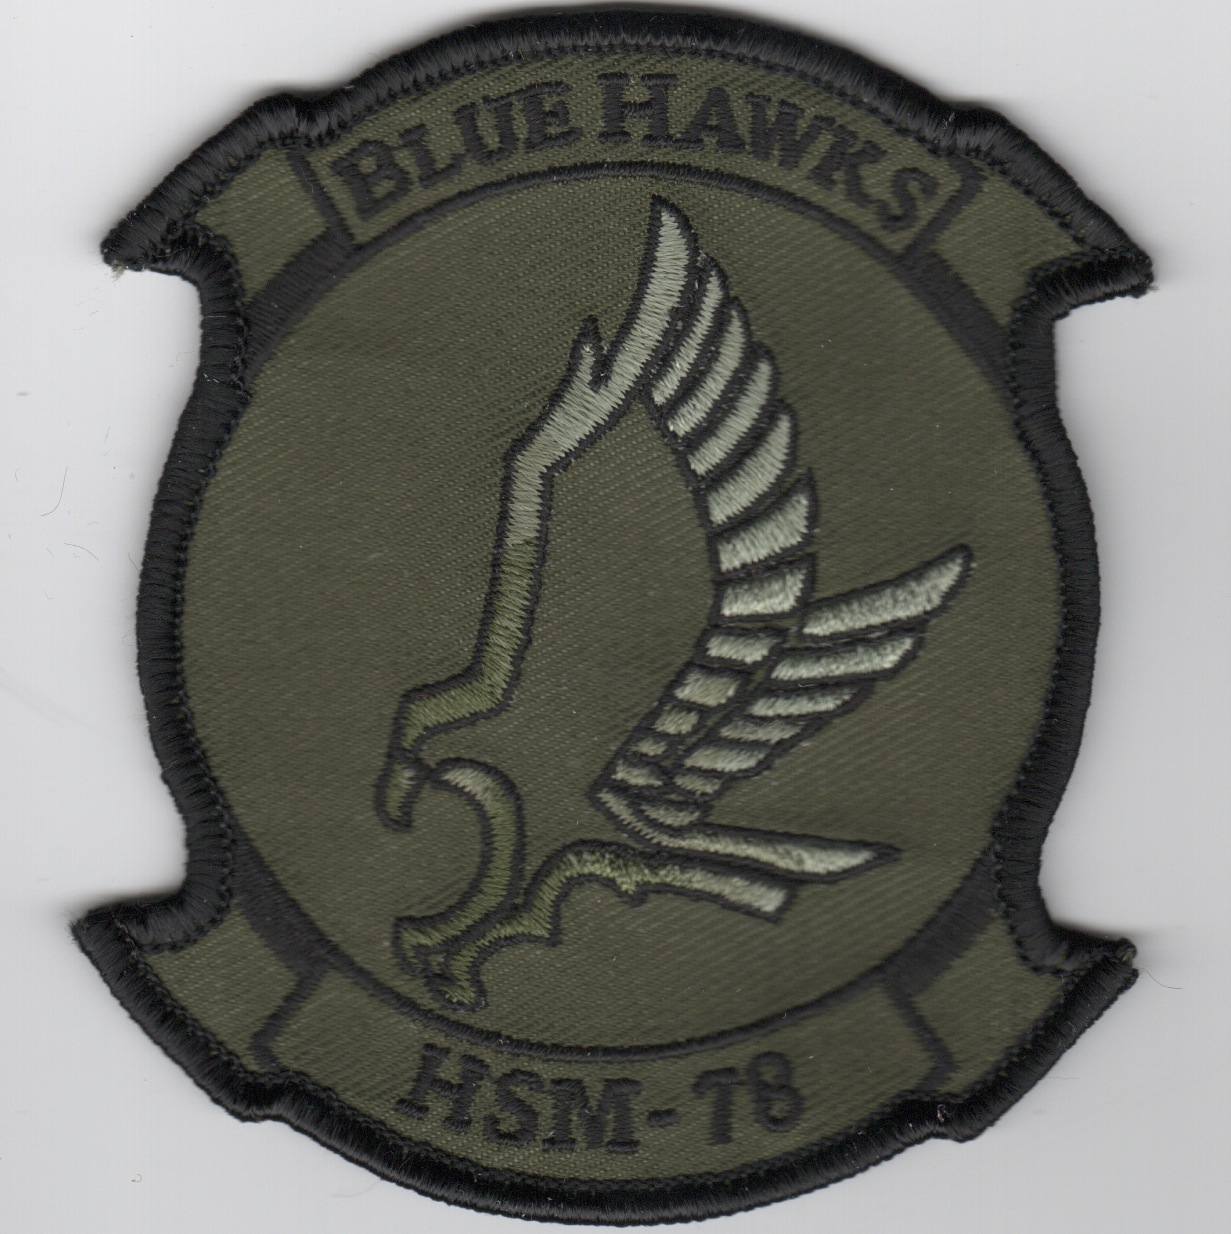 HSM-78 Squadron Patch (Subd)